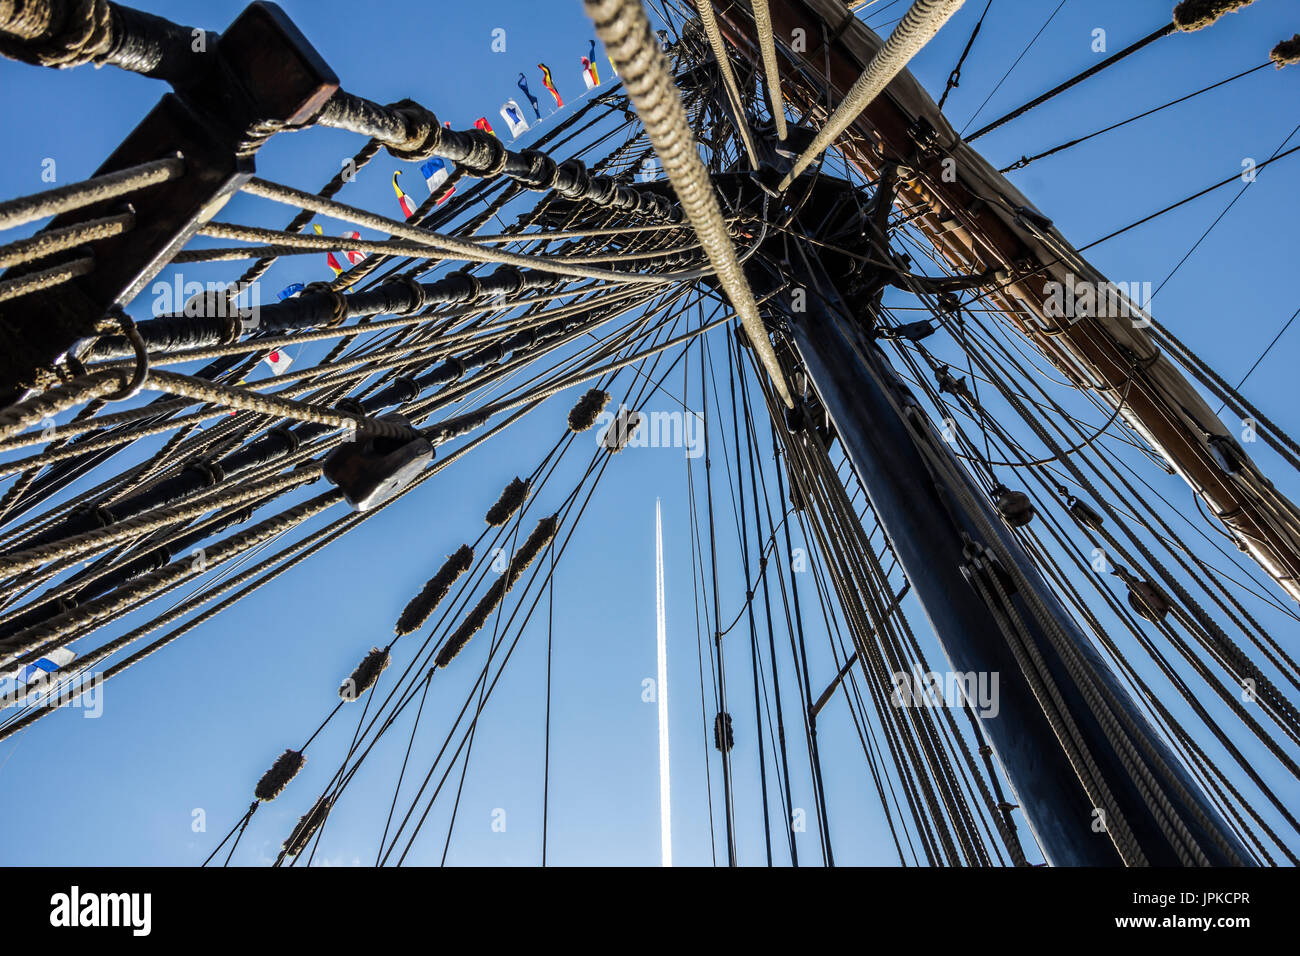 Parte nautico di una barca o un grande vecchio veliero con cordicelle, rigging, vela, piloni, nodi, segnale bandiere blu cielo Foto Stock